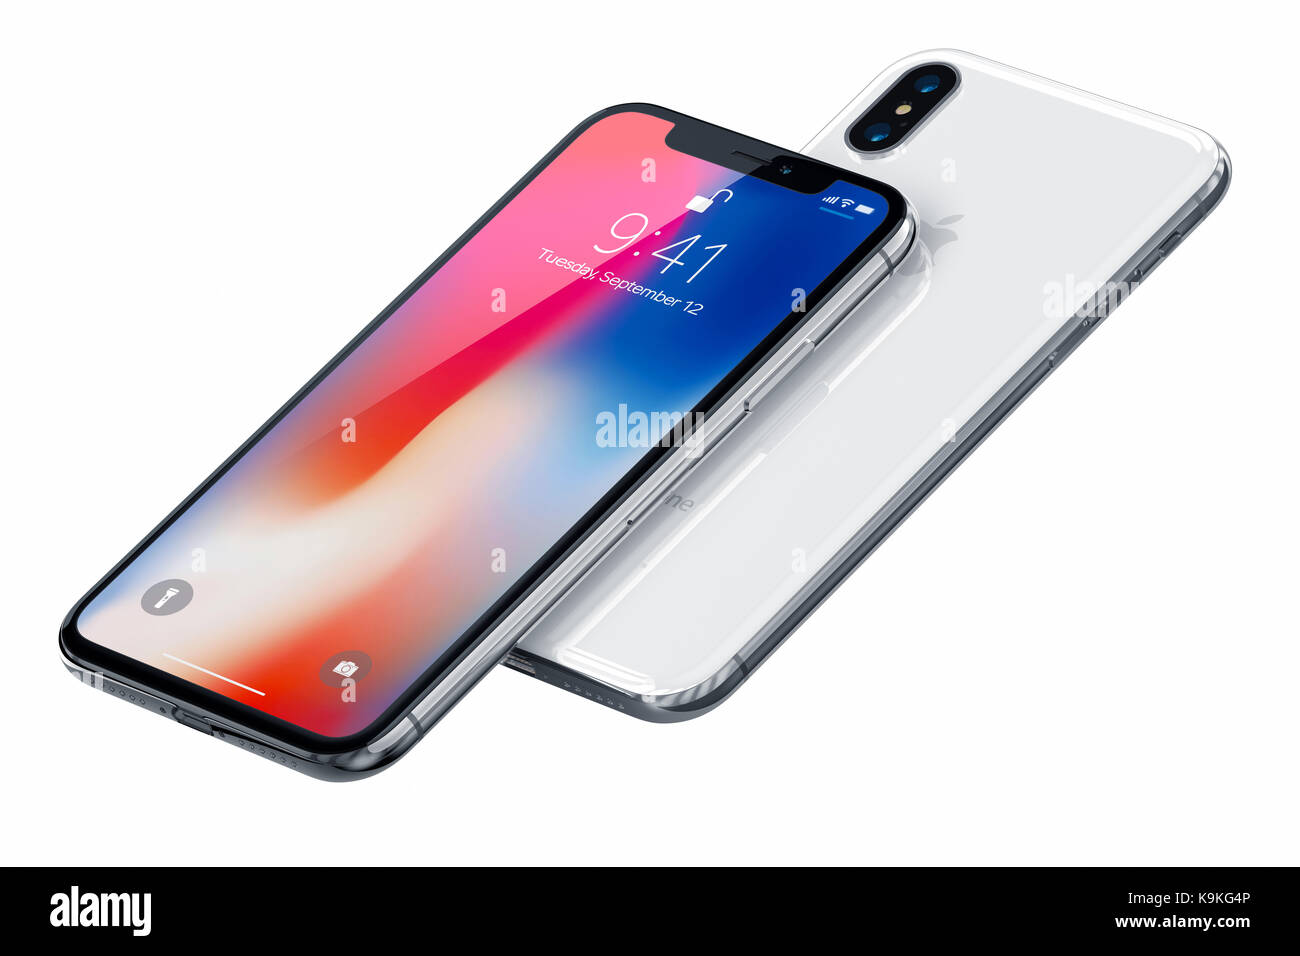 Galati, Rumänien - 20. September 2017: 3D-Render von zwei neuen iPhone X (10) Hinweisendes Editorial Bild auf weißem Hintergrund. Spacegrau ans Silber i Stockfoto